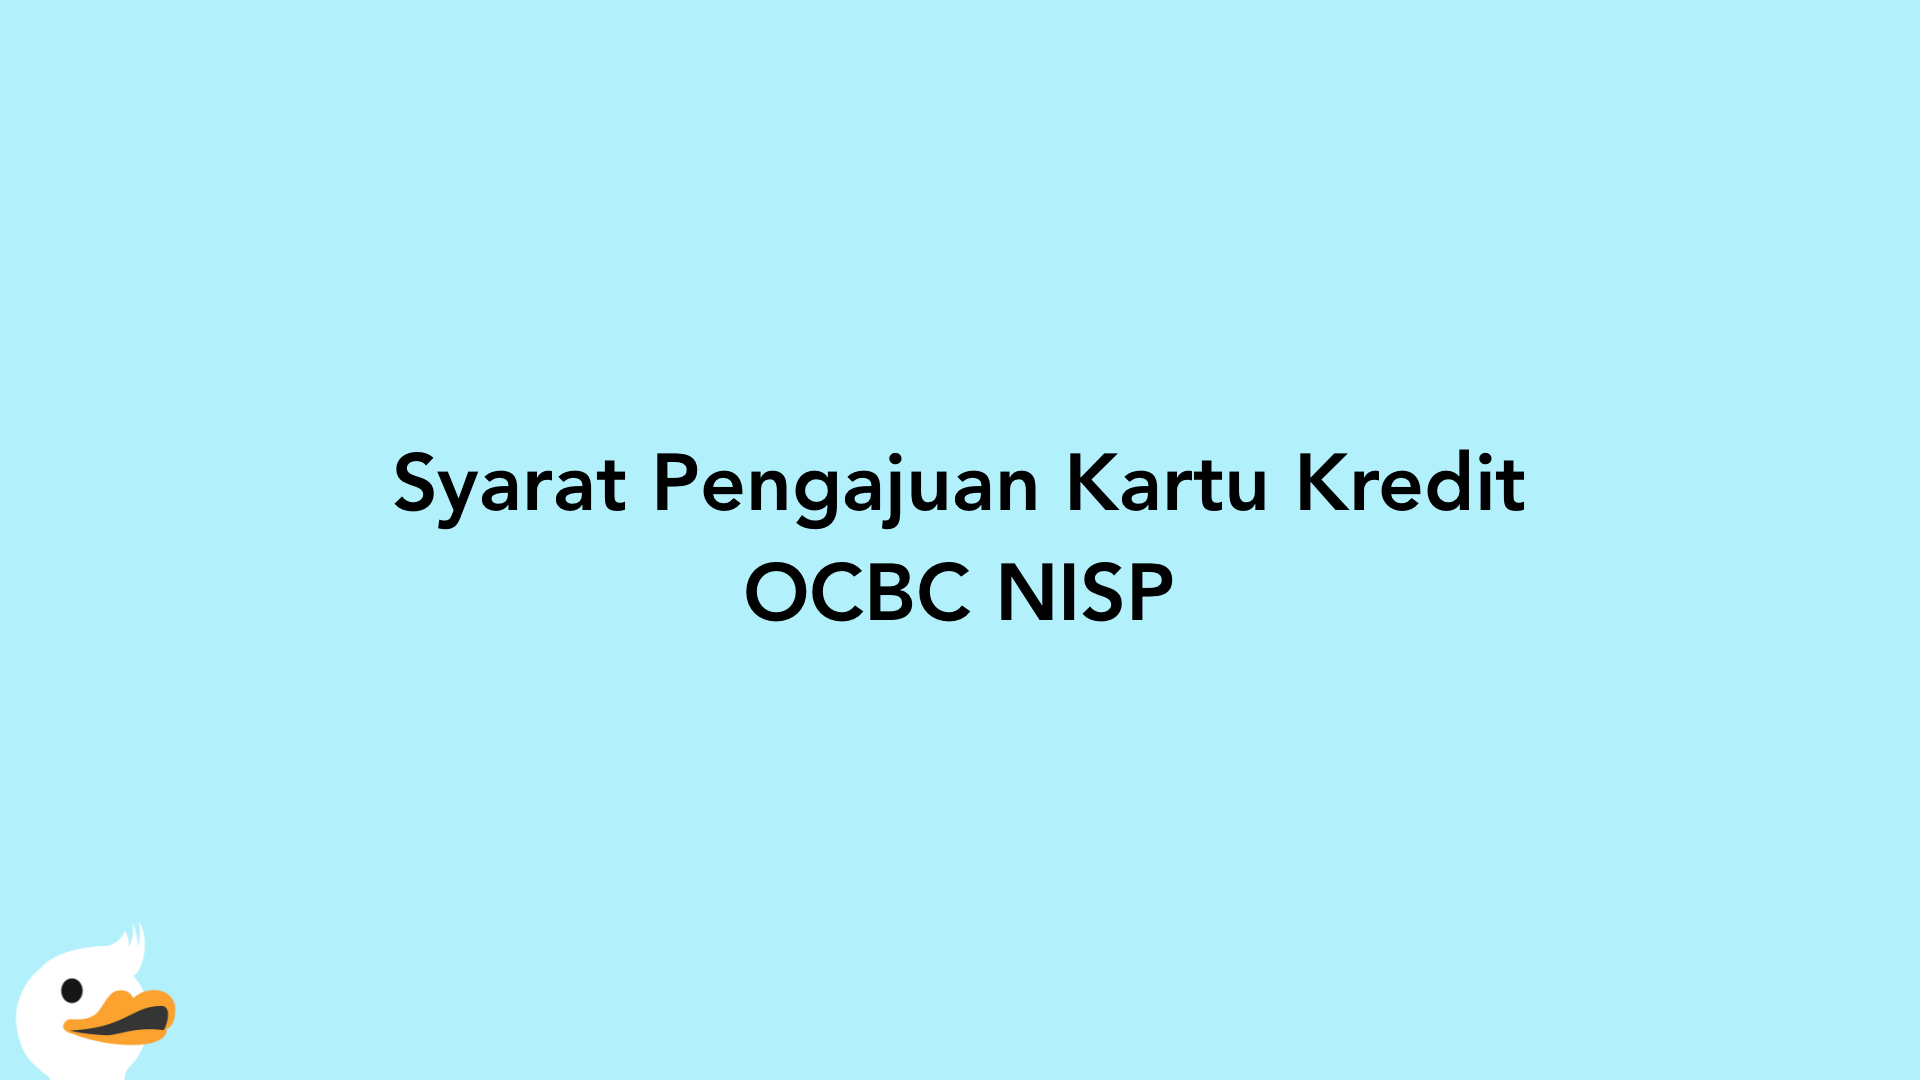 Syarat Pengajuan Kartu Kredit OCBC NISP